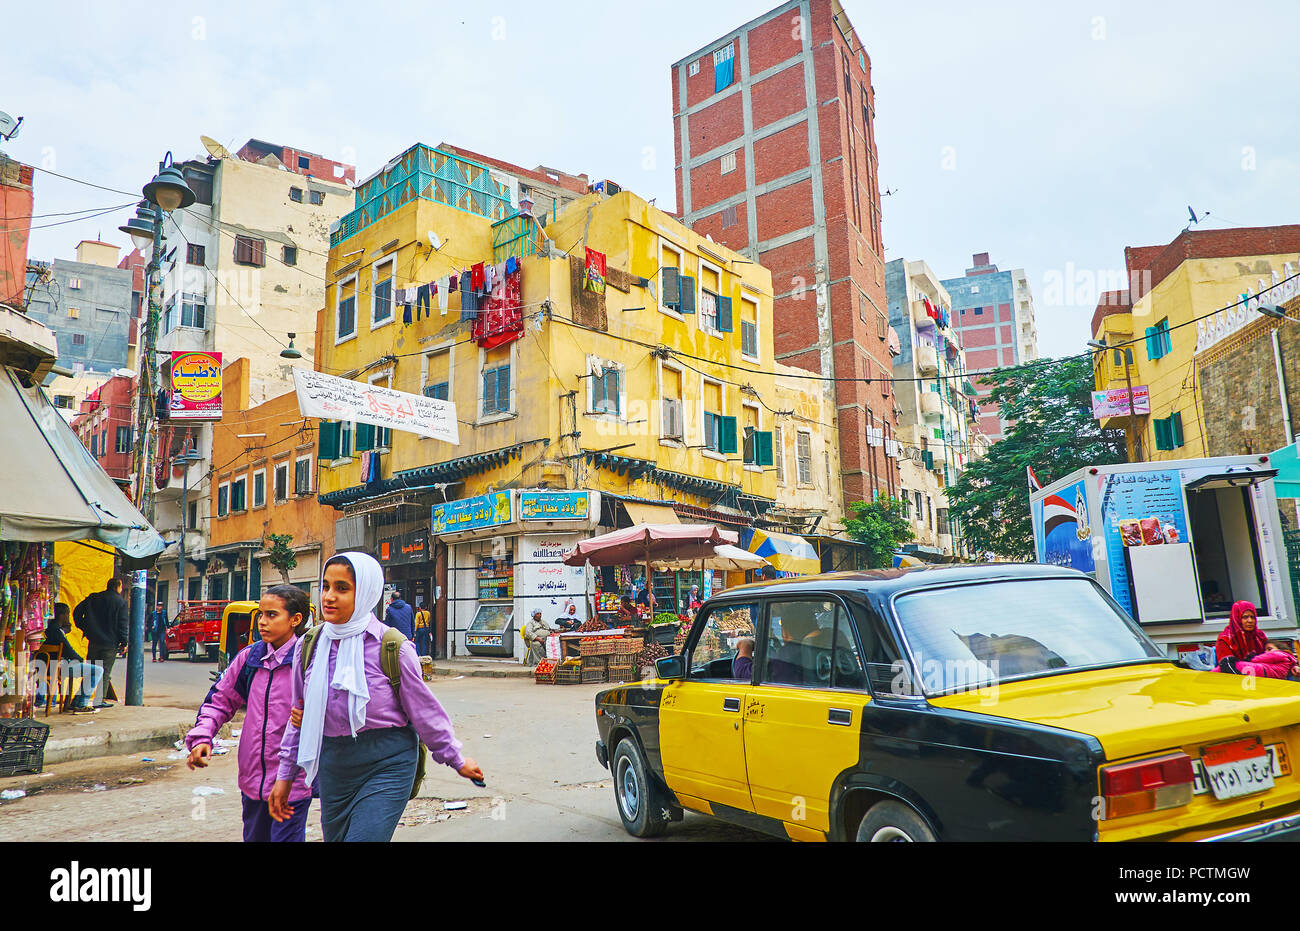 Alessandria, Egitto - 18 dicembre 2017: La scena urbana nel distretto di Karmouz - il vecchio squae mercato con negozi e bancarelle, alla guida di taxi e i bambini, andare Foto Stock